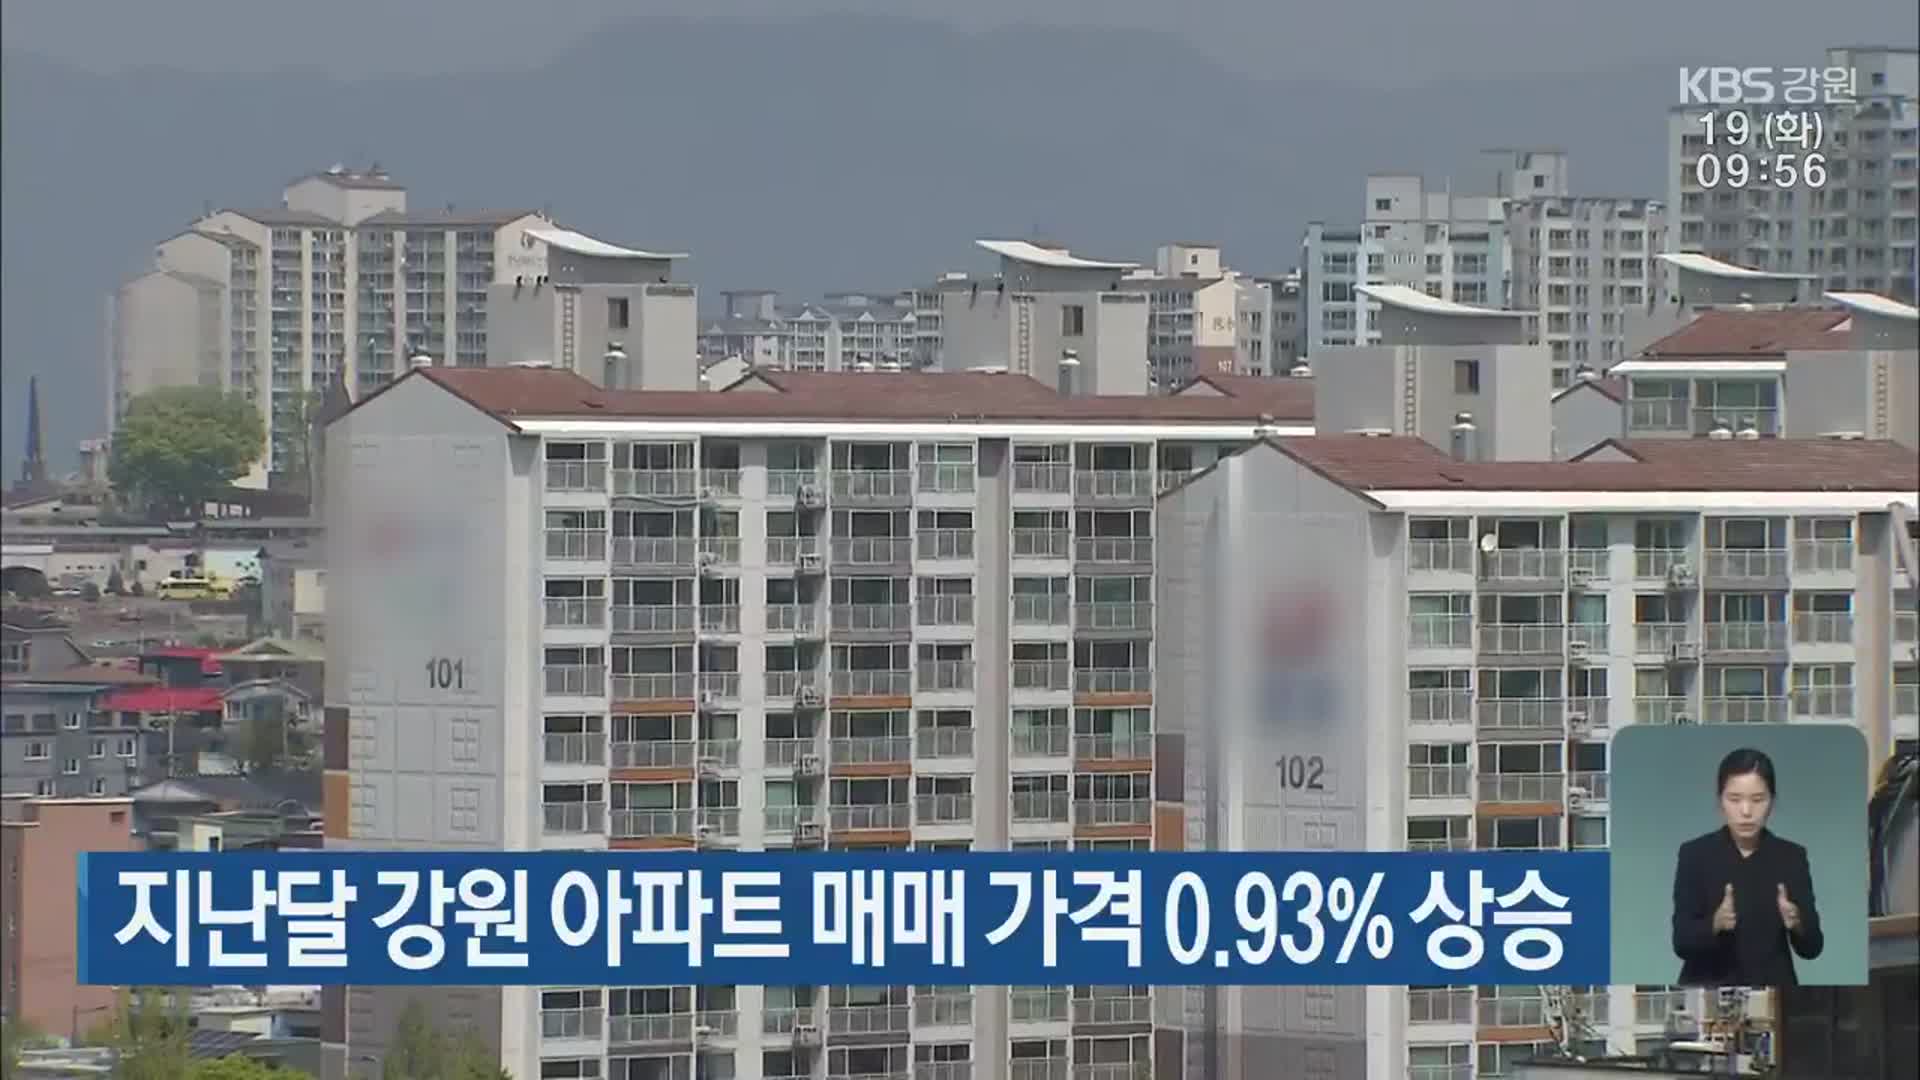 지난달 강원 아파트 매매 가격 0.93% 상승